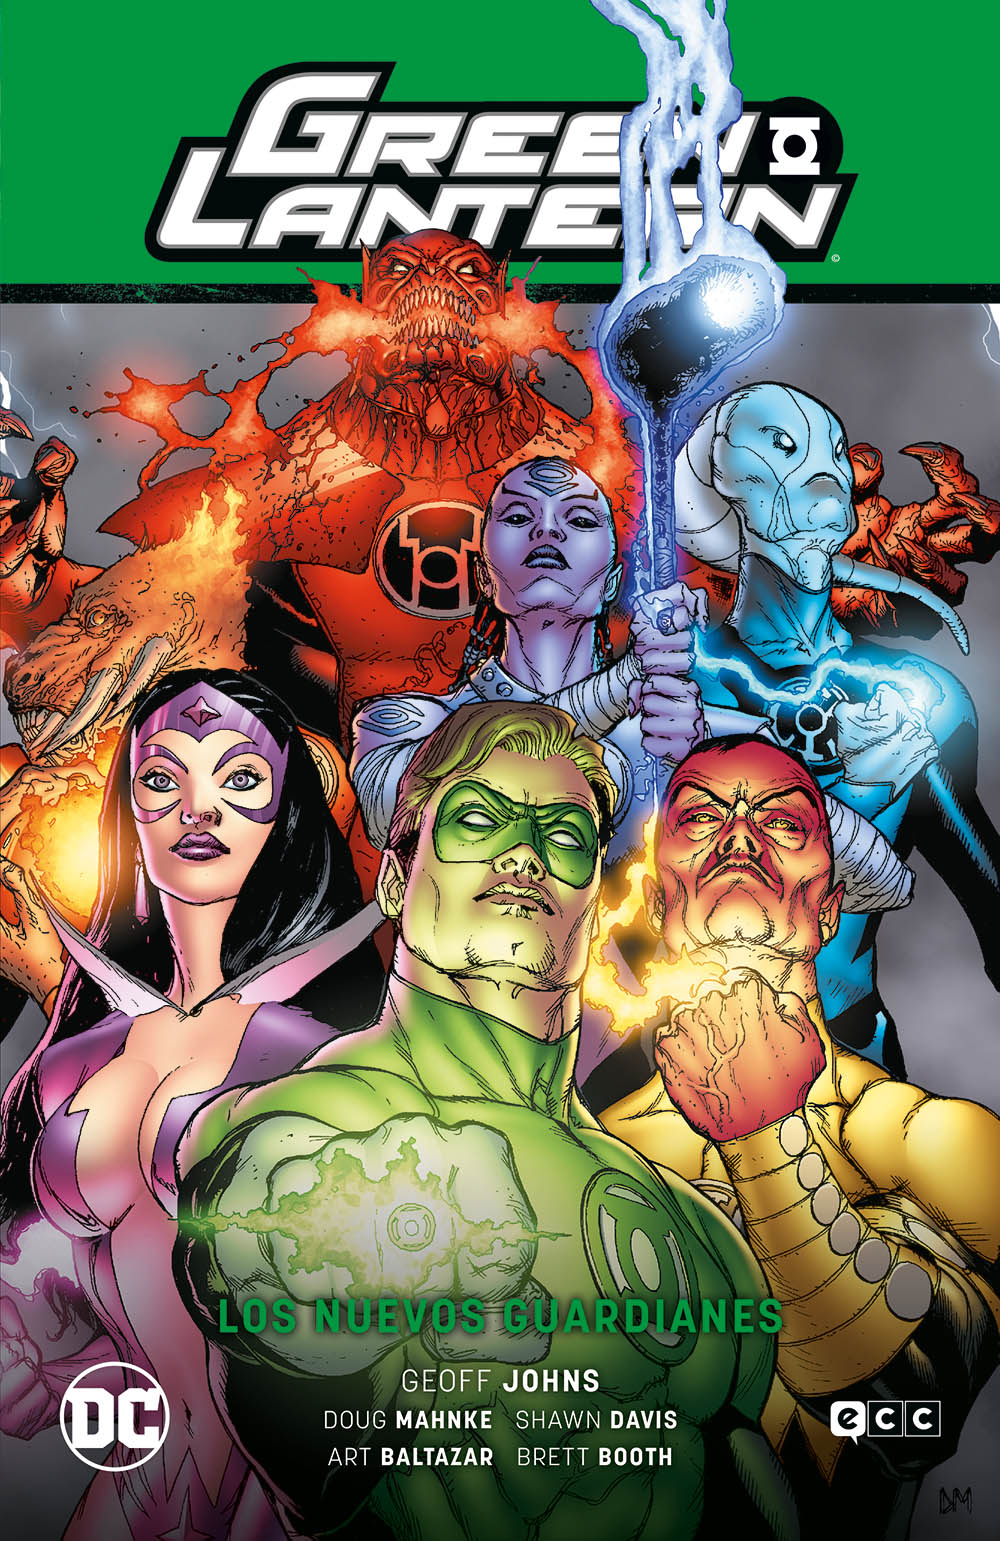 SEGUNDA MANO Green Lantern Vol. 8: Los Nuevos Guardianes (Green Lantern Saga - El día más brillante Parte 2)- COPIAR